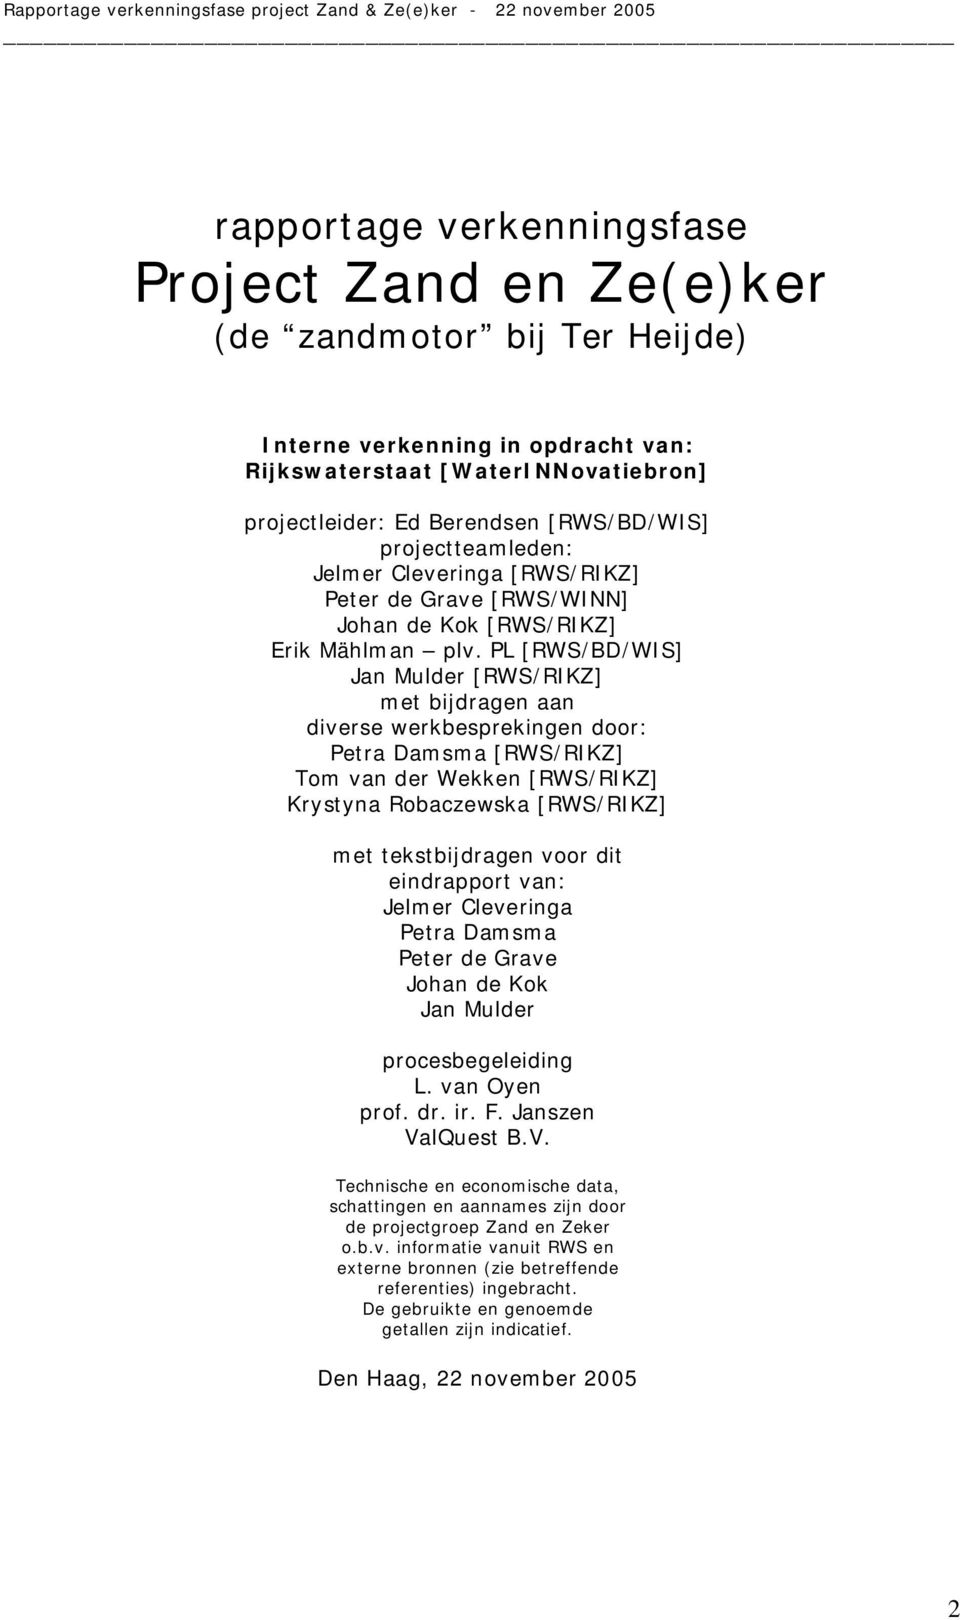 PL [RWS/BD/WIS] Jan Mulder [RWS/RIKZ] met bijdragen aan diverse werkbesprekingen door: Petra Damsma [RWS/RIKZ] Tom van der Wekken [RWS/RIKZ] Krystyna Robaczewska [RWS/RIKZ] met tekstbijdragen voor